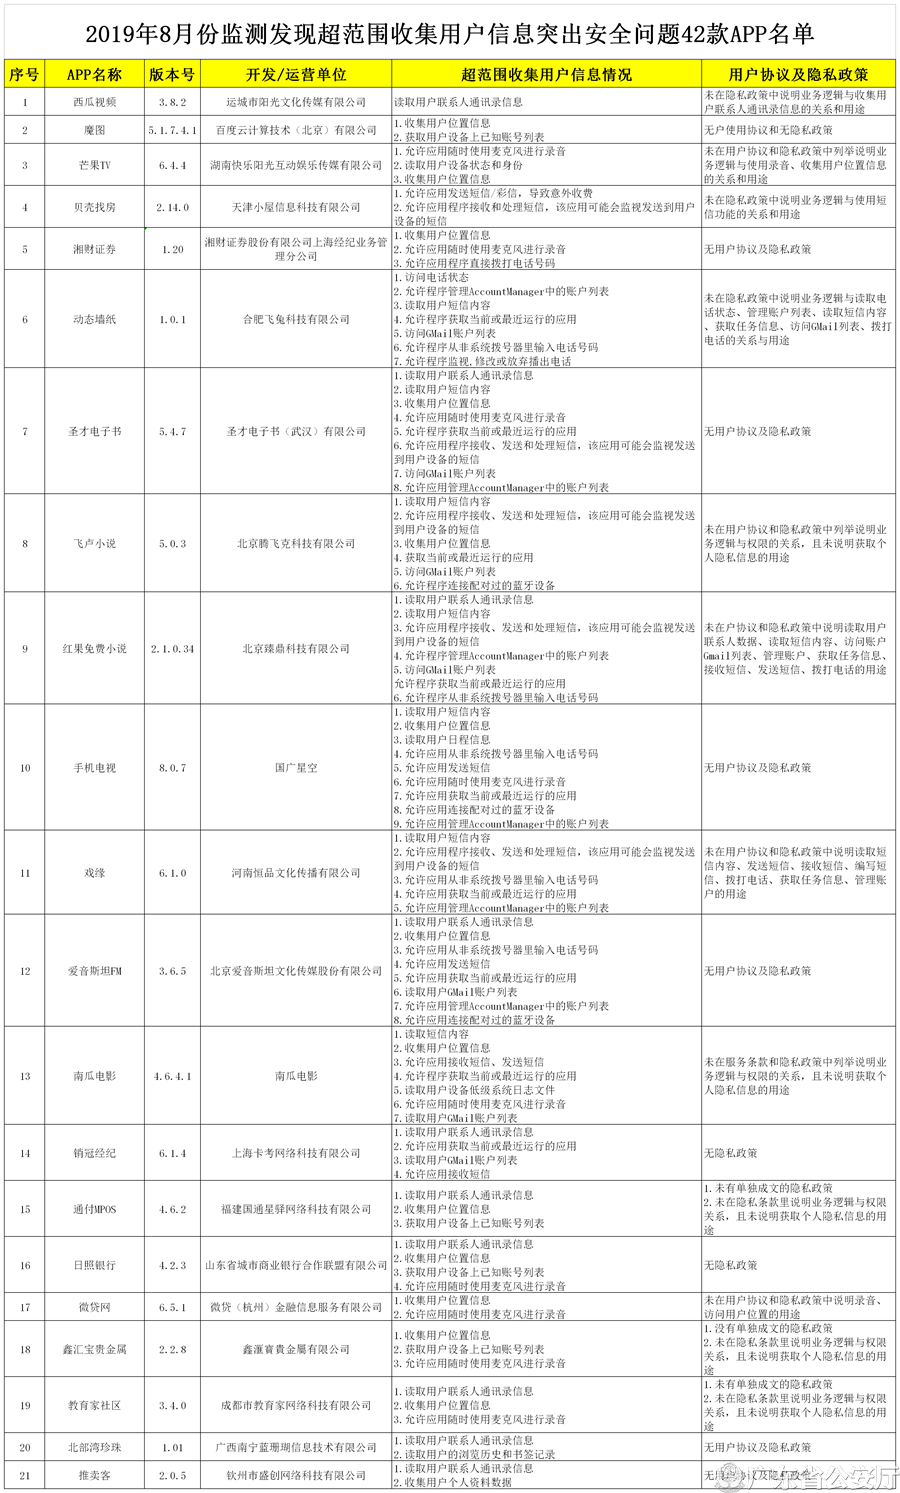 广东警方再曝光42款存在违规行为APP：国通星驿“通付MPOS”上榜